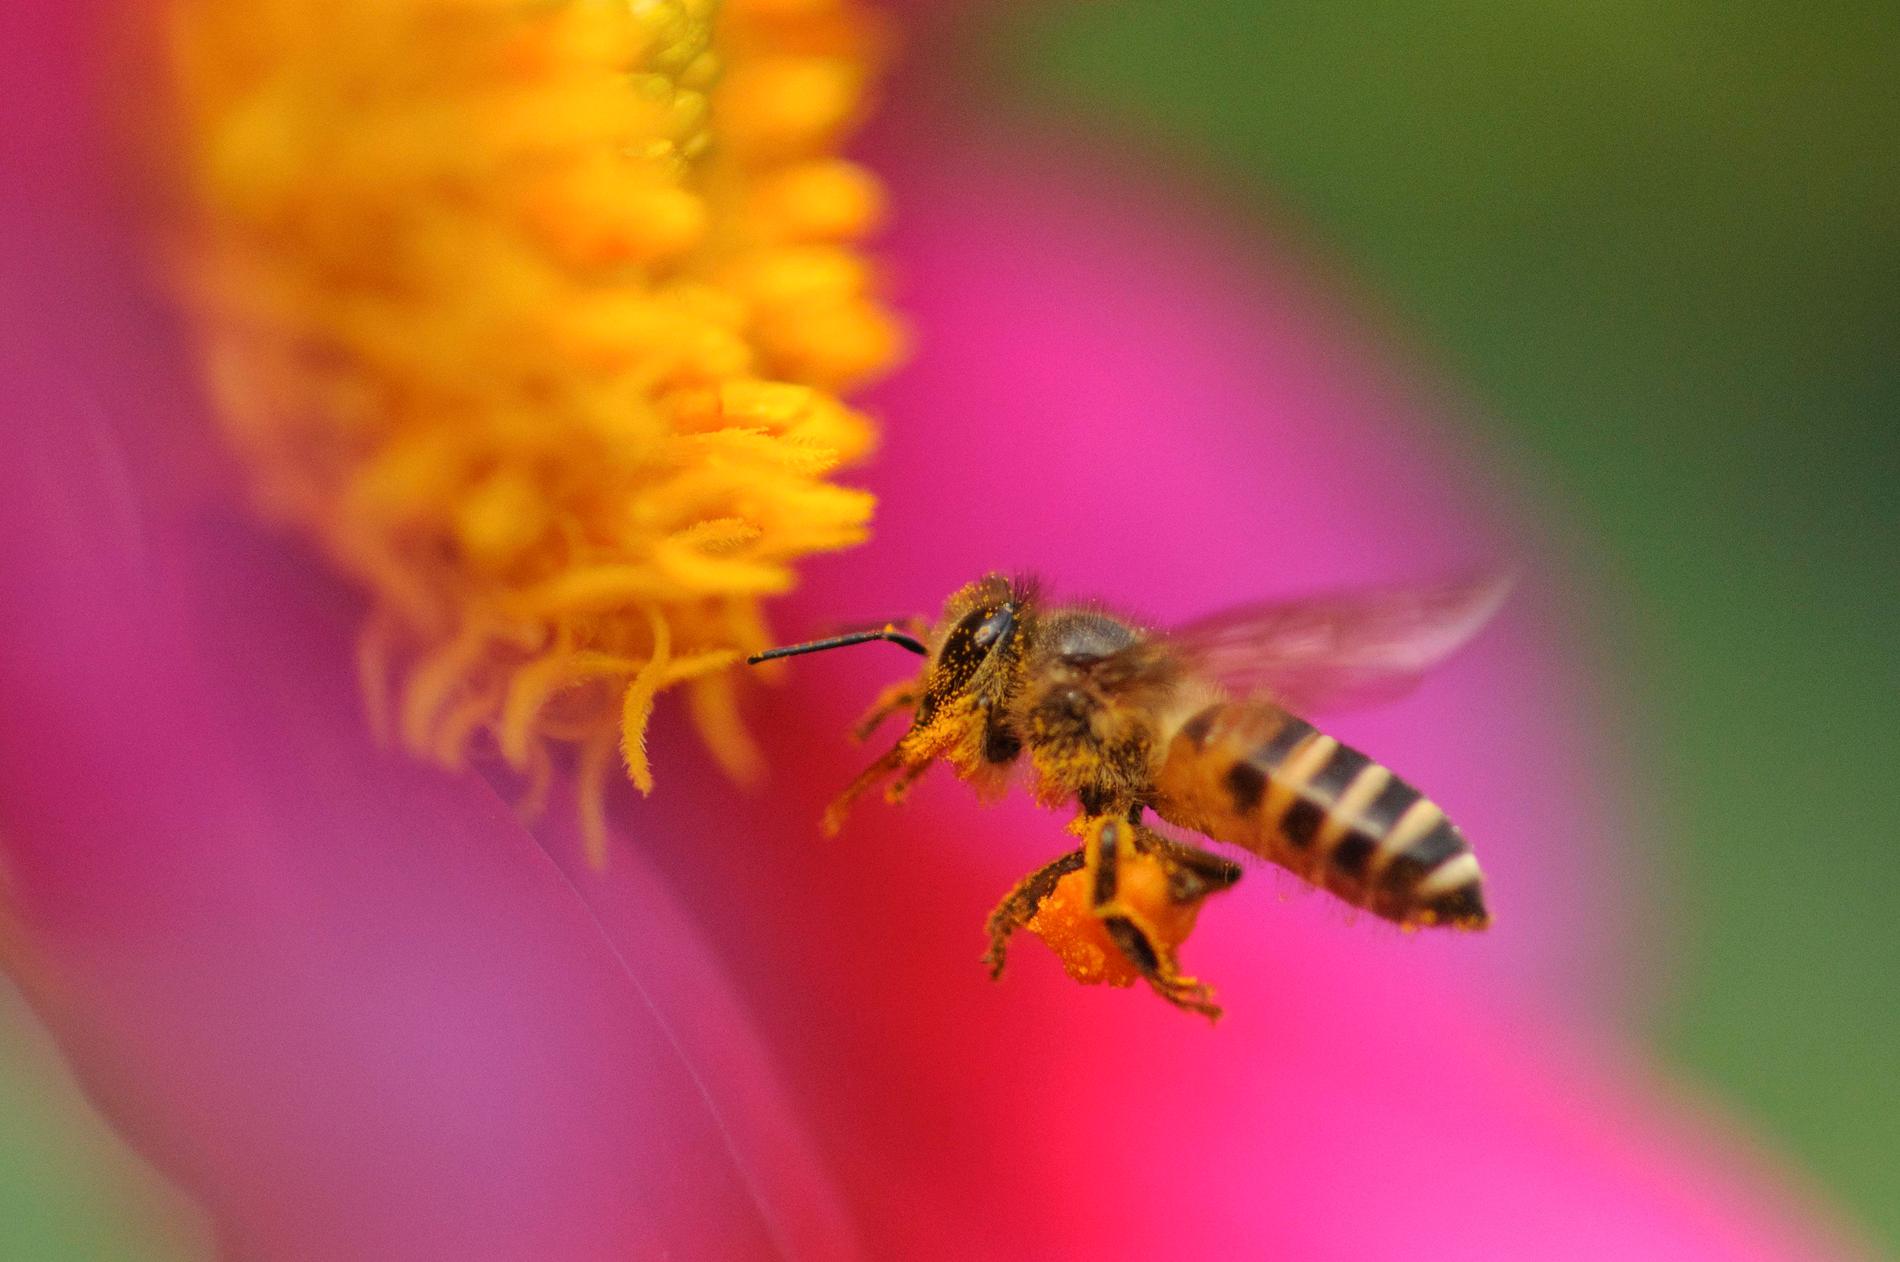 Honungsbi söker efter nektar. Arkivbild.